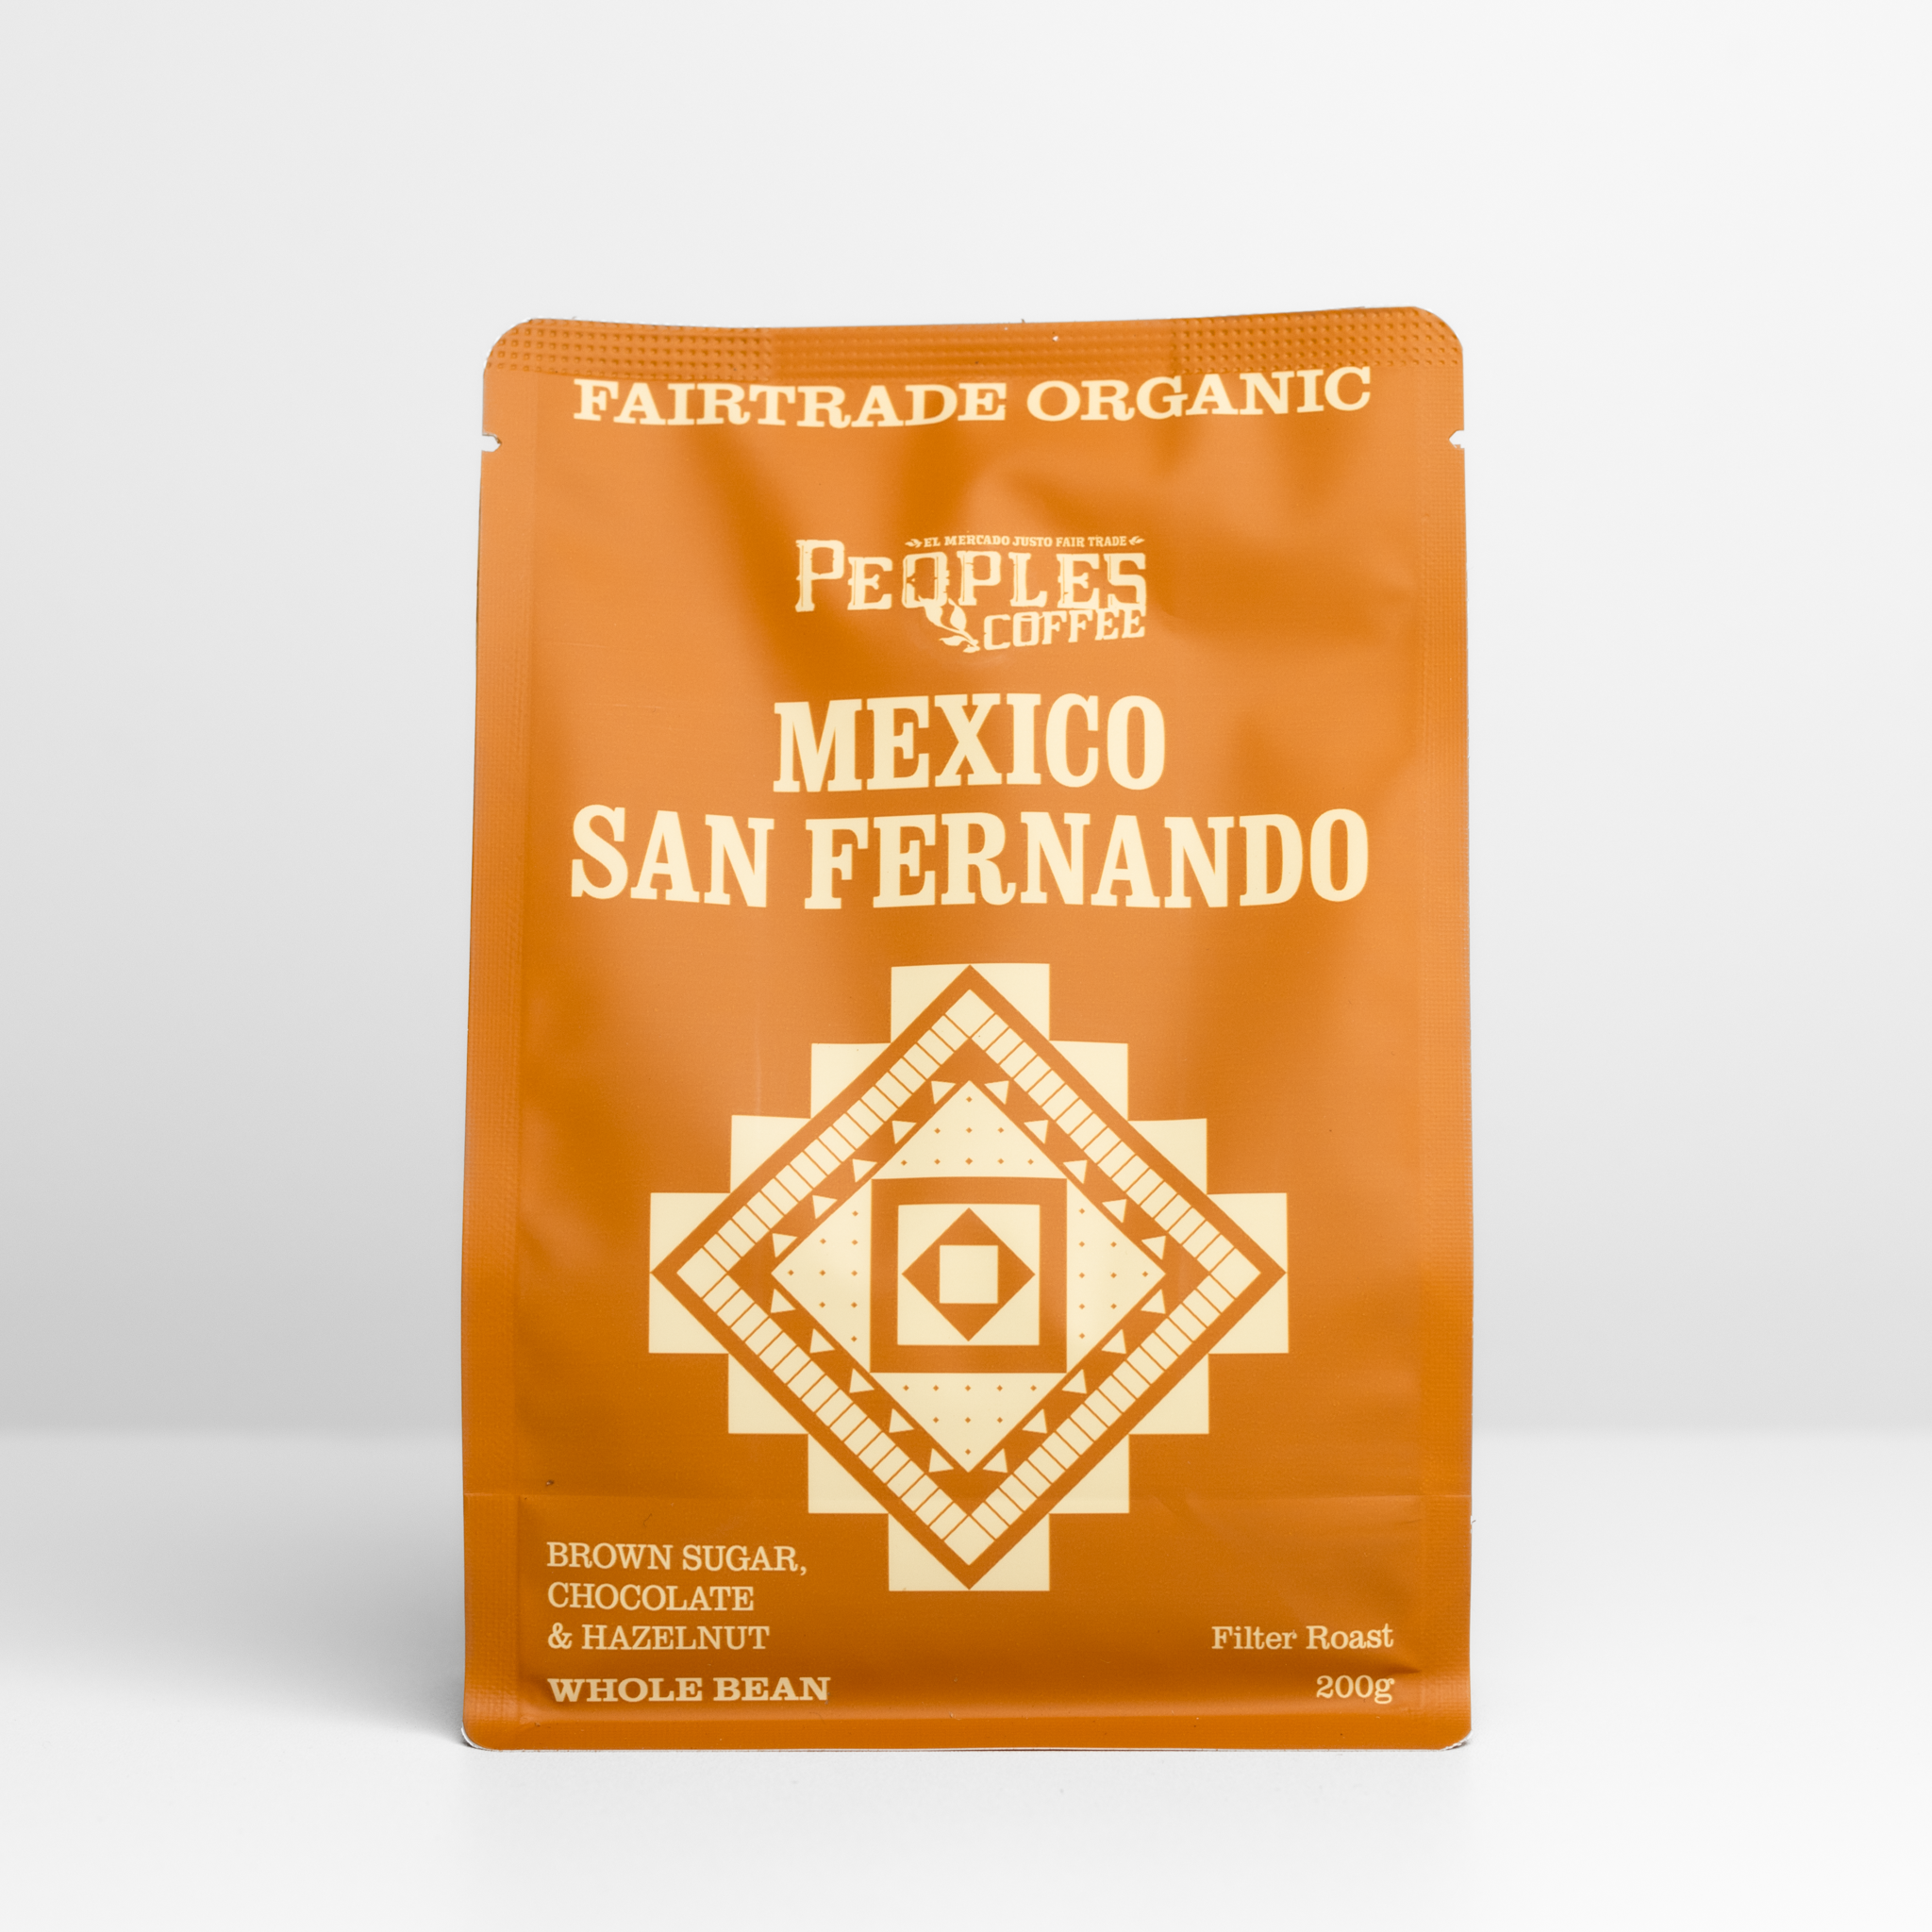 Mexico San Fernando